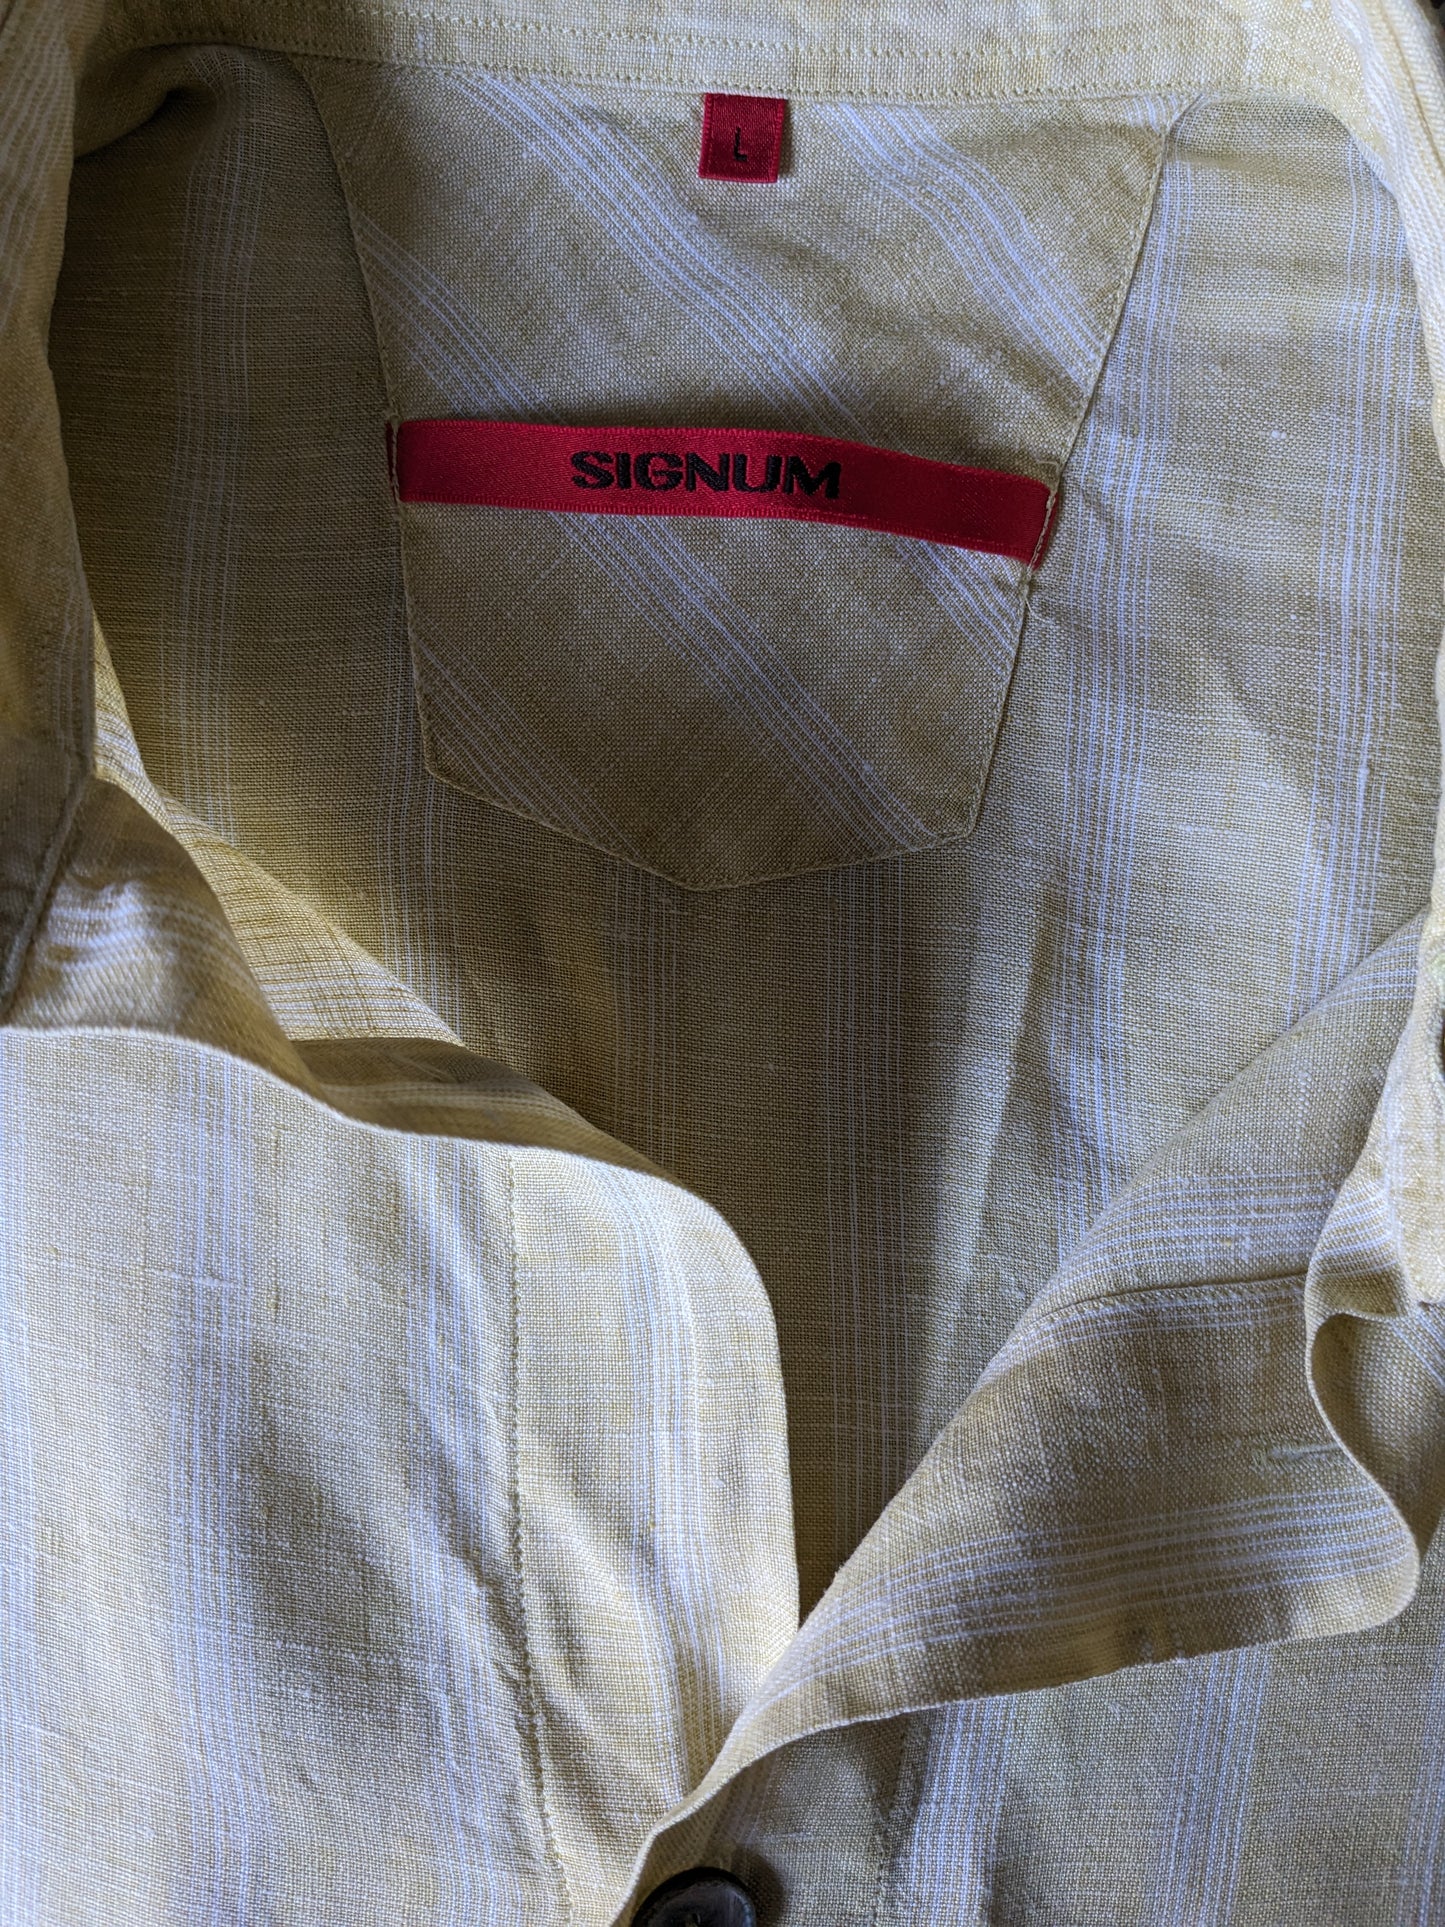 Camicia corta vintage in lino. Pulsanti più grandi. A scacchi giallo bianco. Taglia L / XL.